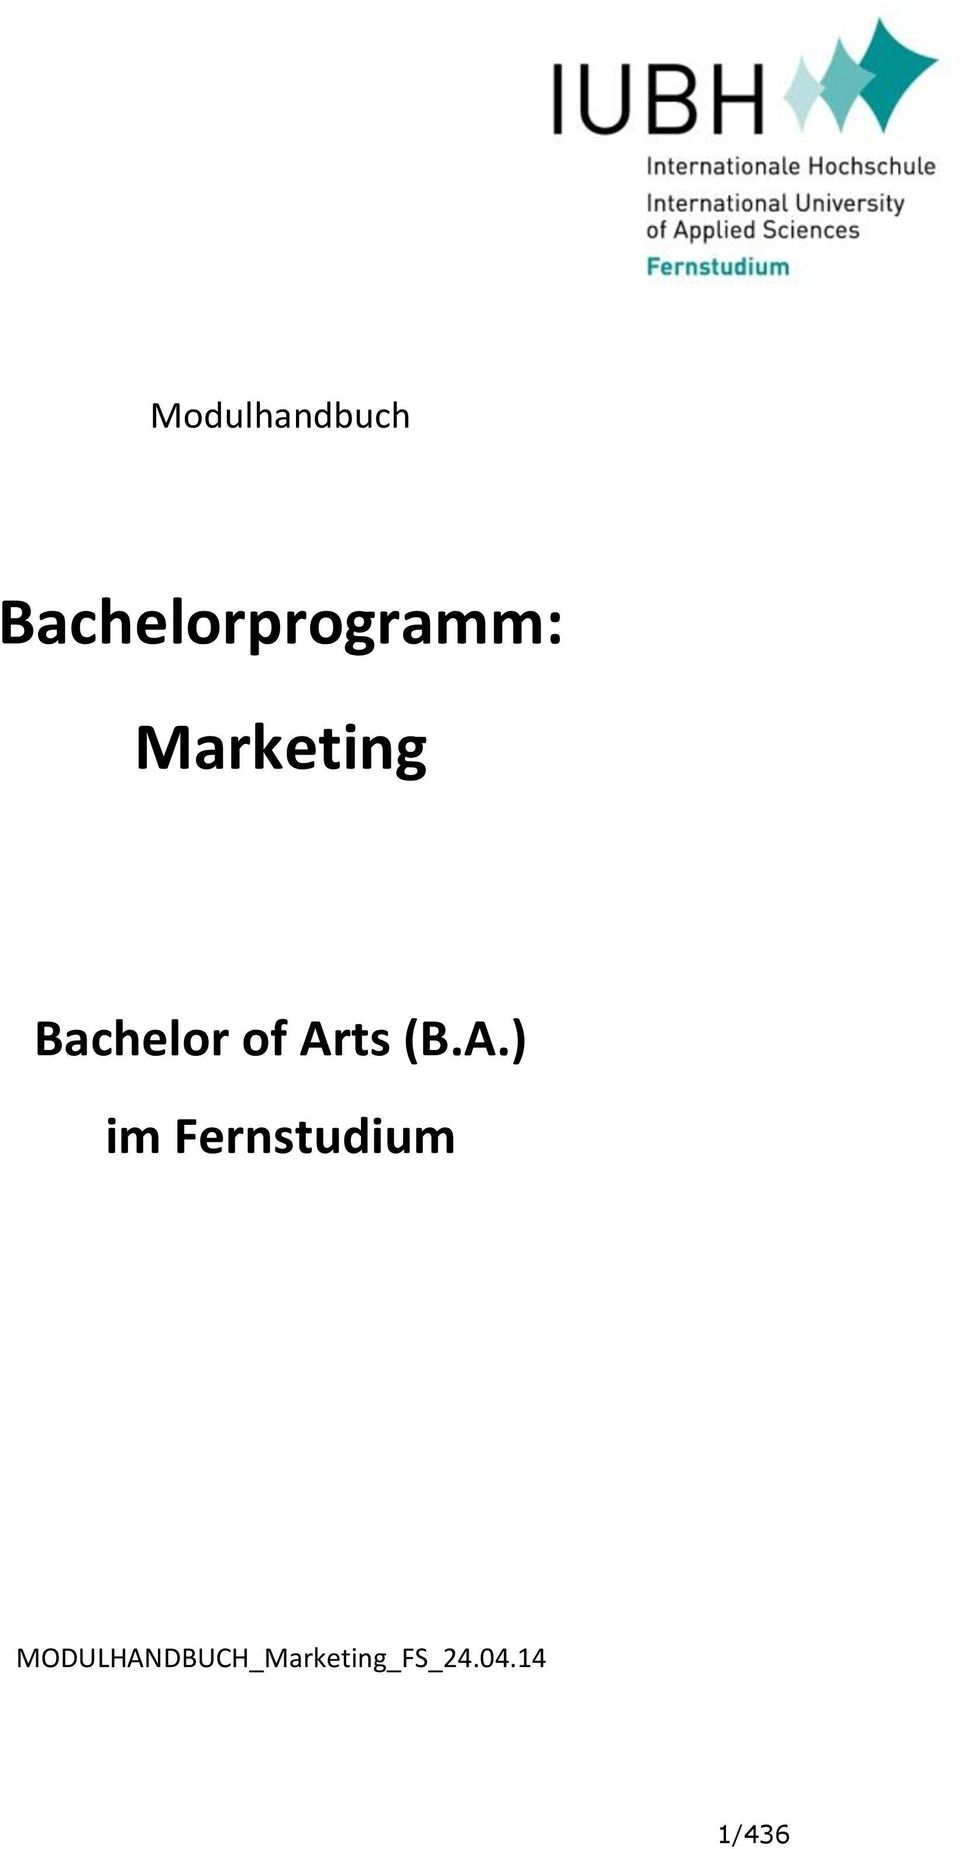 Bachelor of Ar